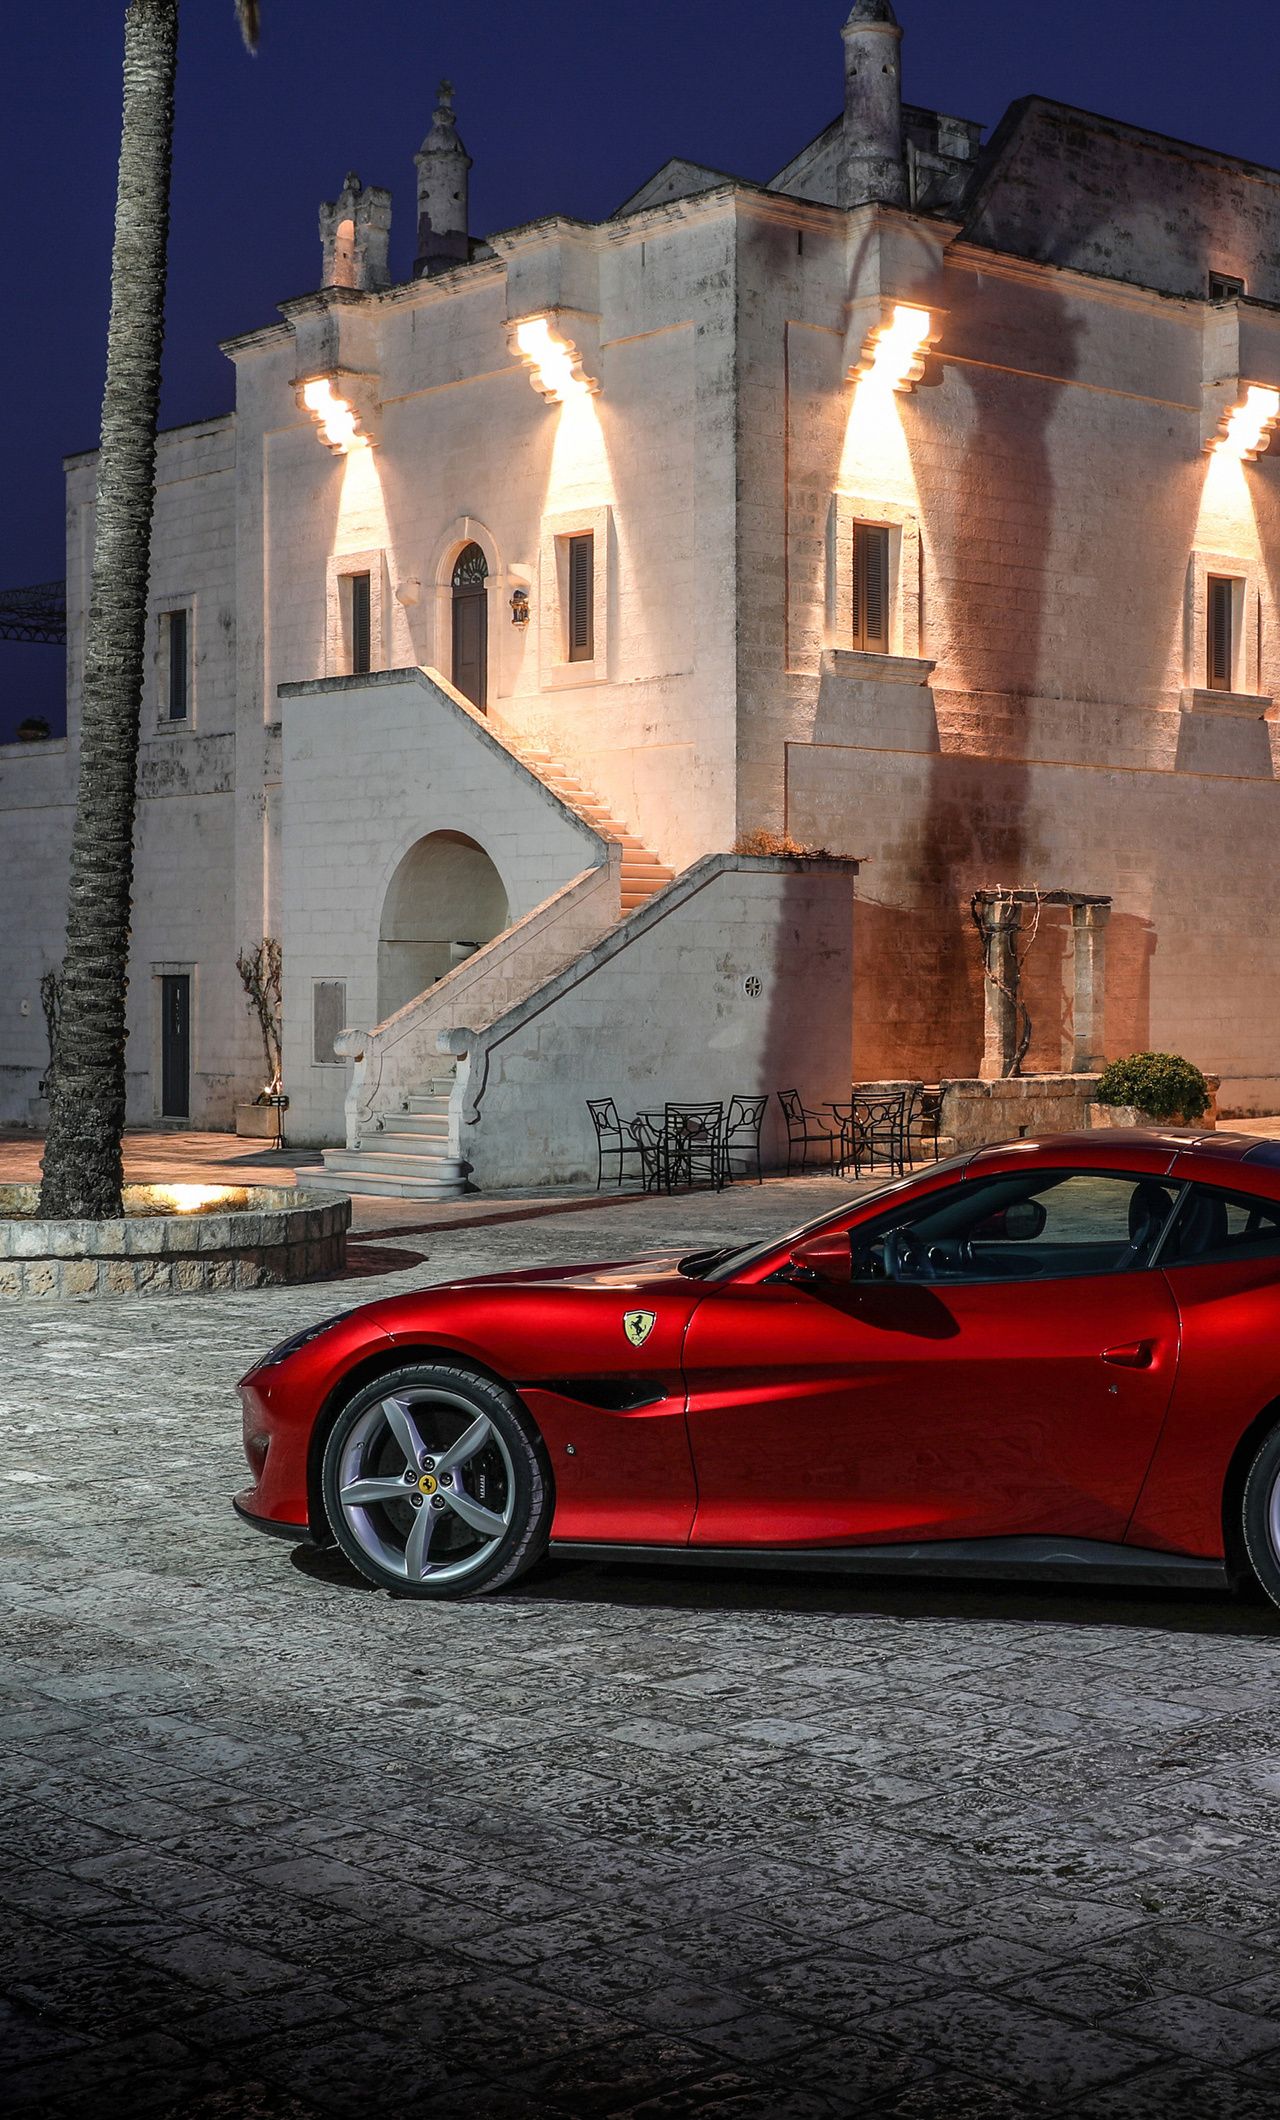 Ferrari Portofino 4k iPhone HD 4k Wallpaper, Image, Background, Photo and Picture